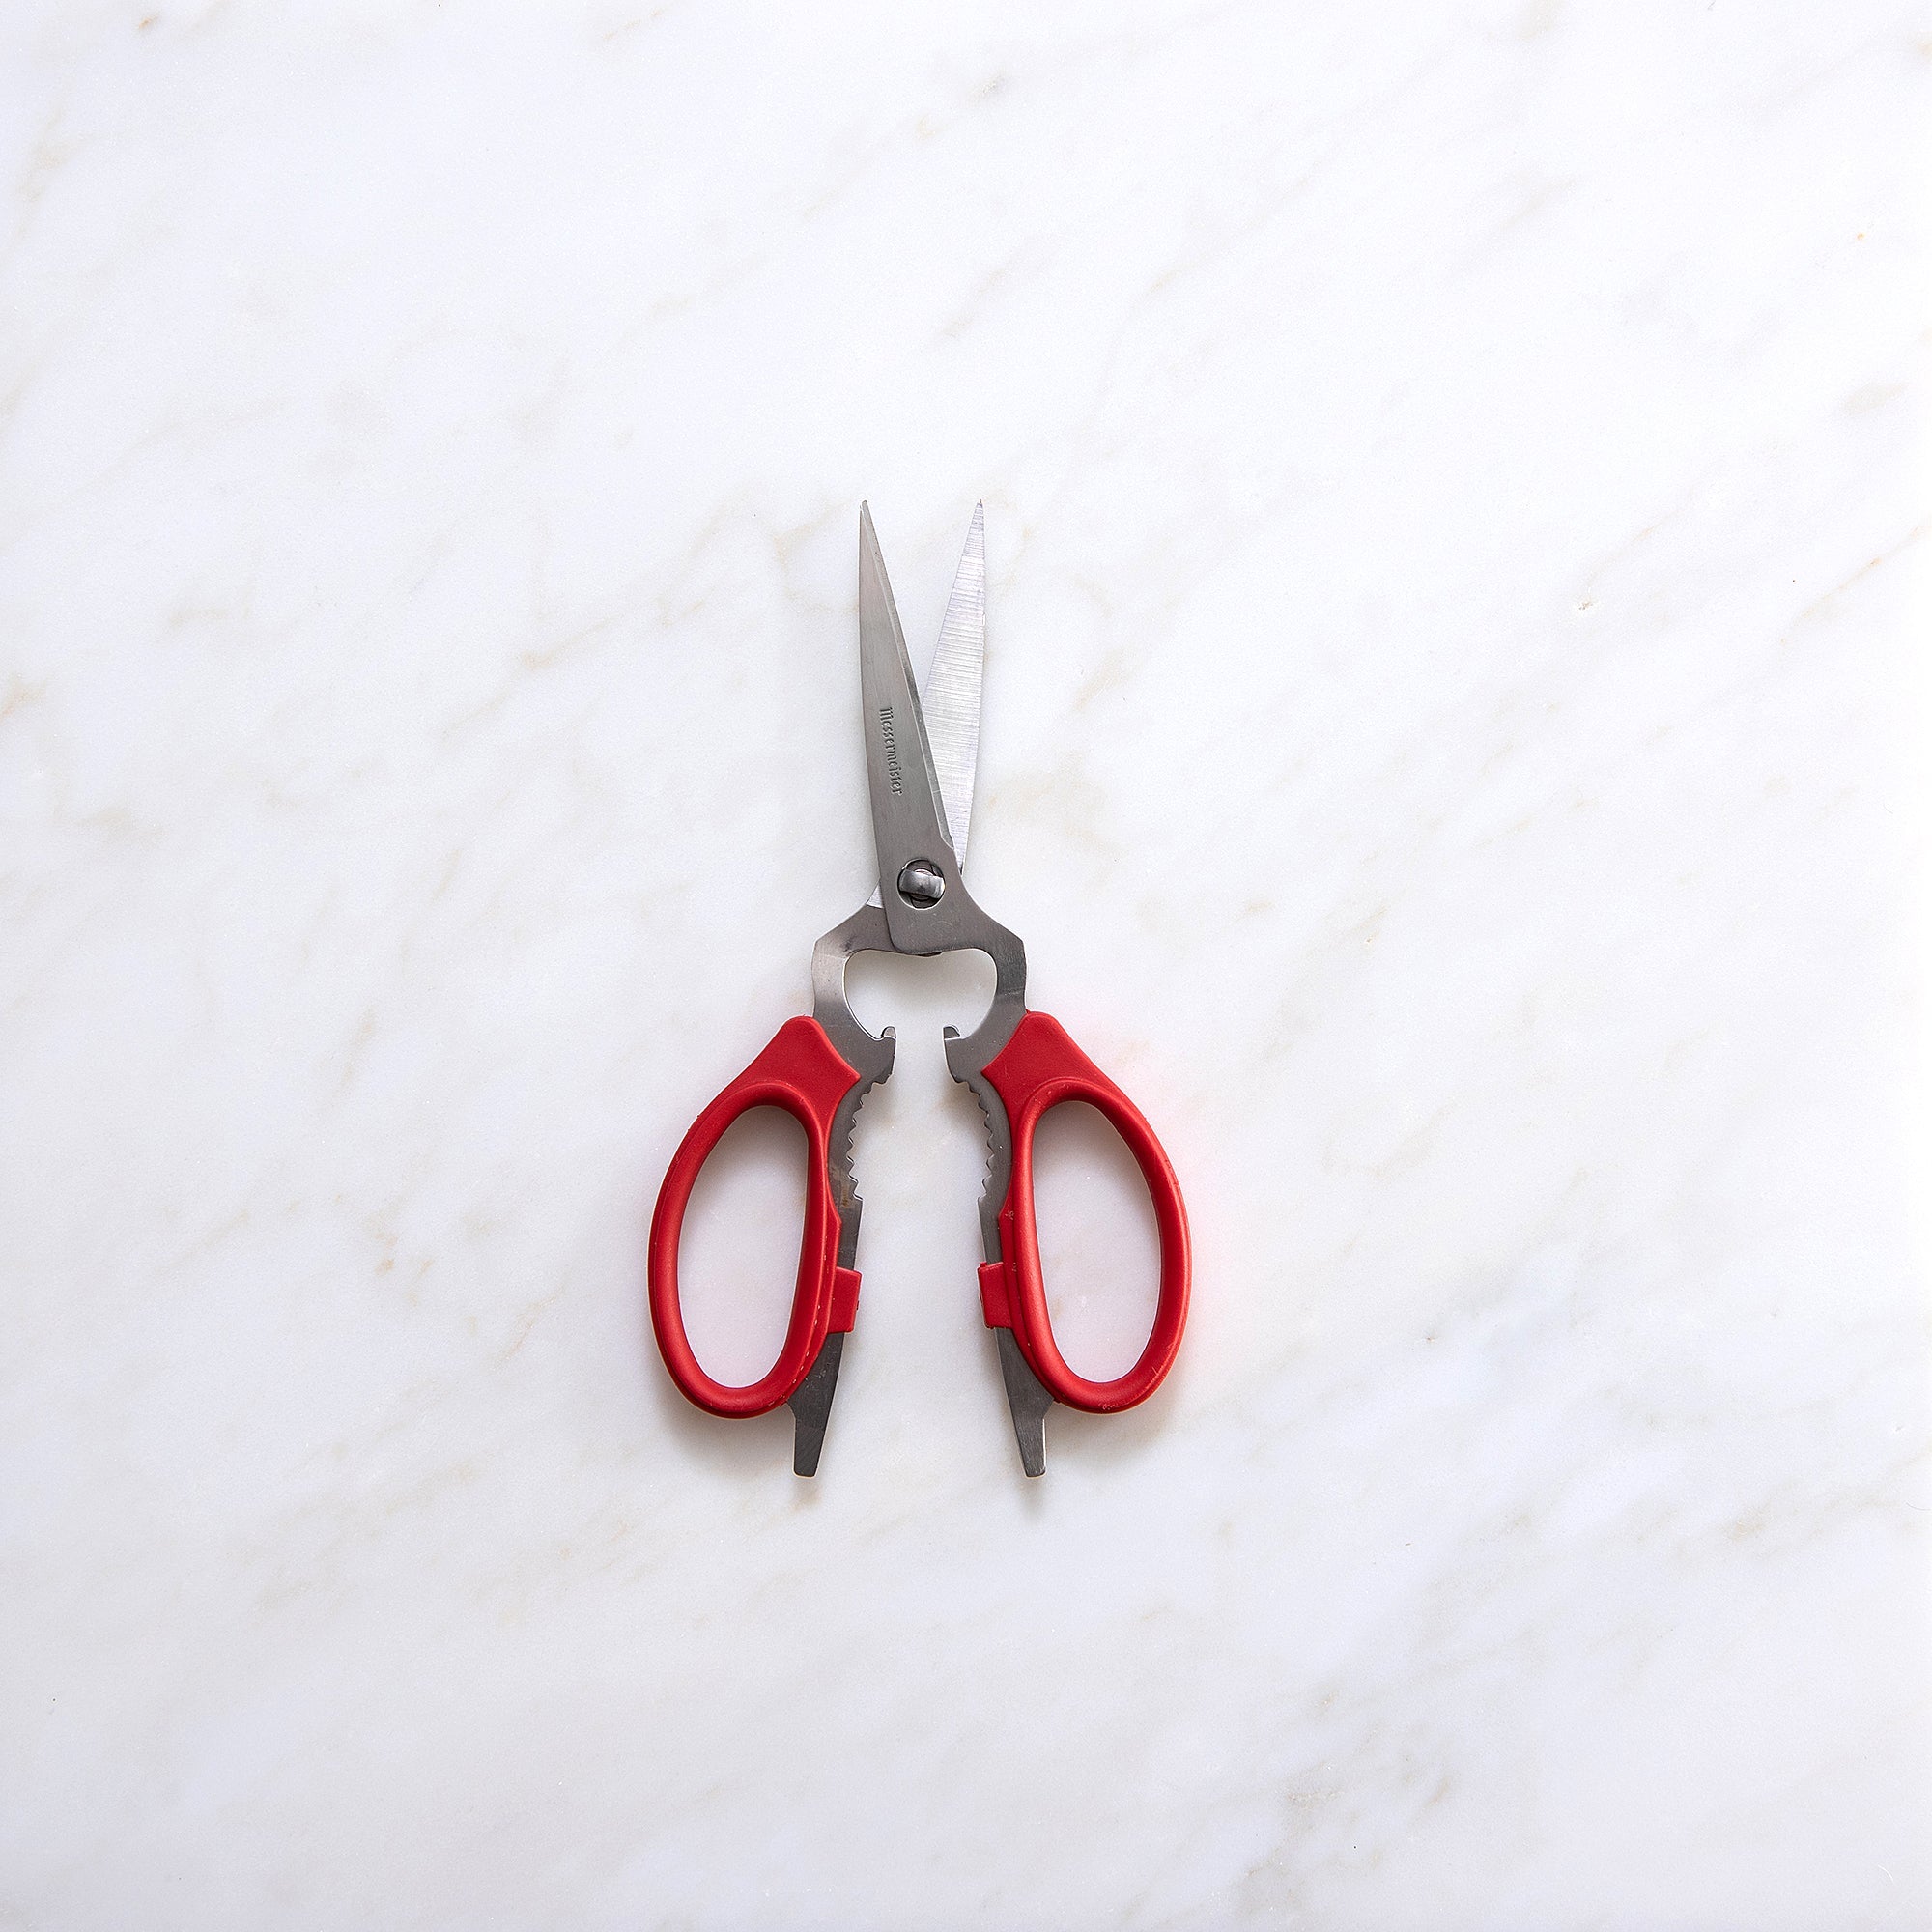 8 Inch Take-Apart Kitchen Scissors - Red